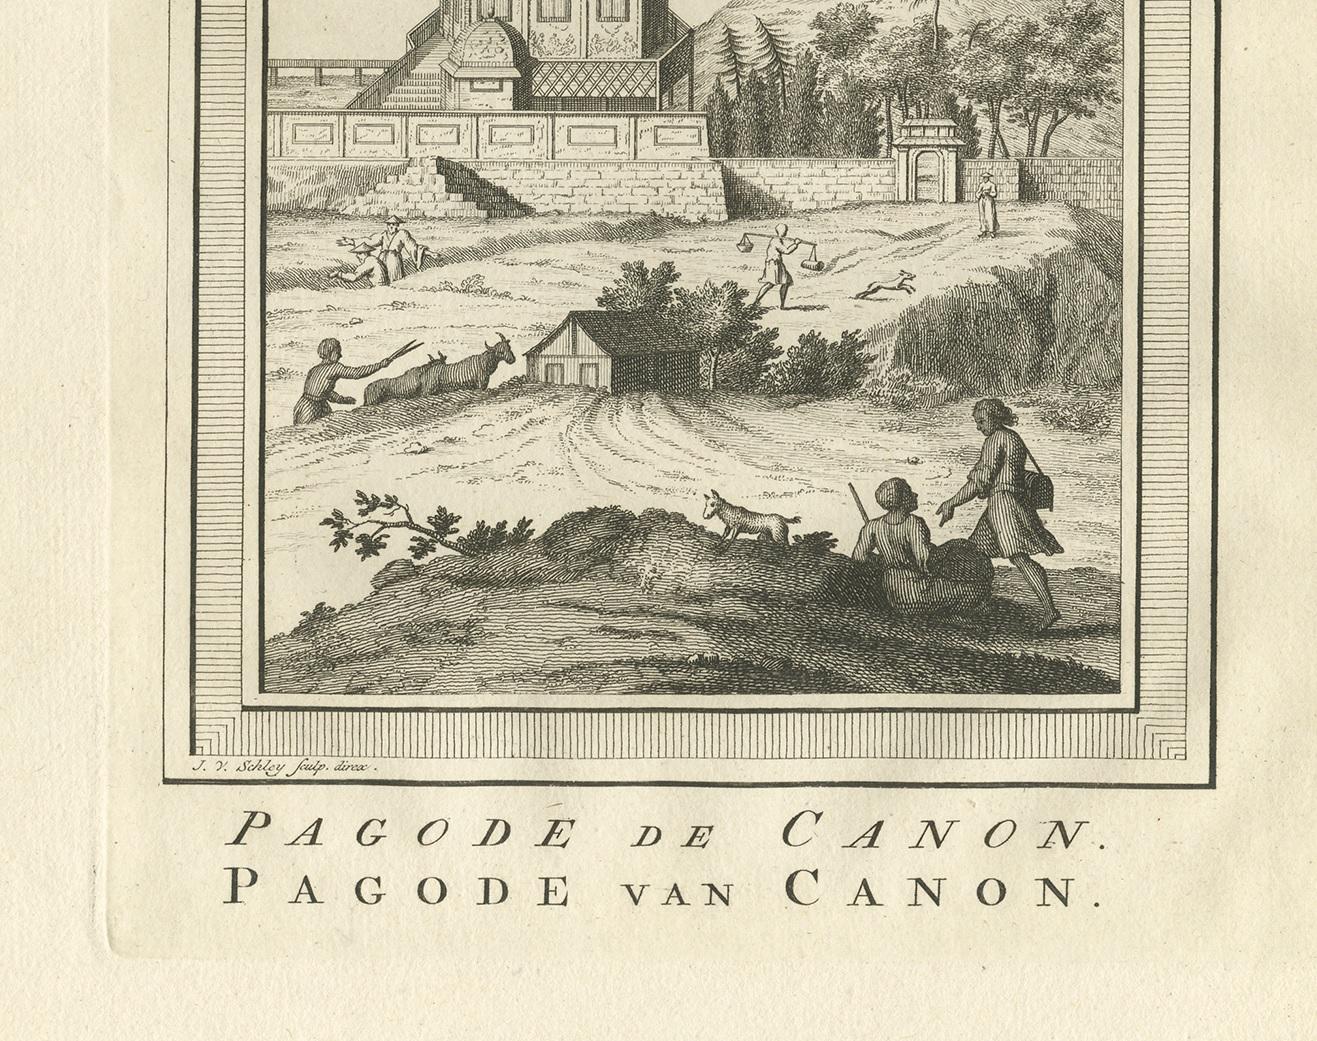 Antiker Druck mit dem Titel 'Pagode de Canon - Pagode van Canon'. Alter Druck, der die Pagode von Canon, Japan, zeigt. Dieser Druck stammt aus der 